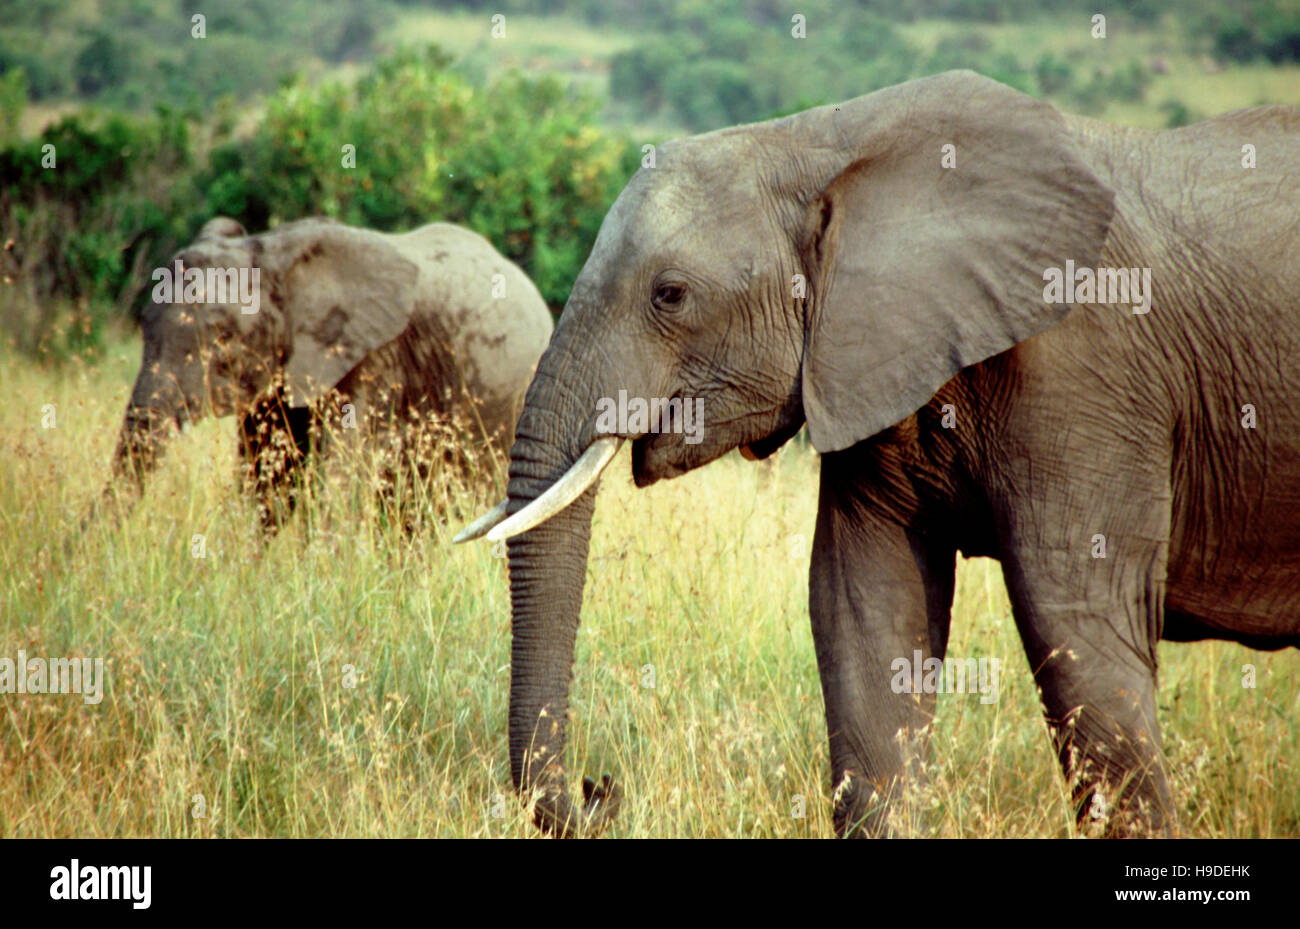 Les éléphants d'Afrique (Loxodonta africana) dans une forêt, Masai Mara National Reserve, Kenya. Banque D'Images